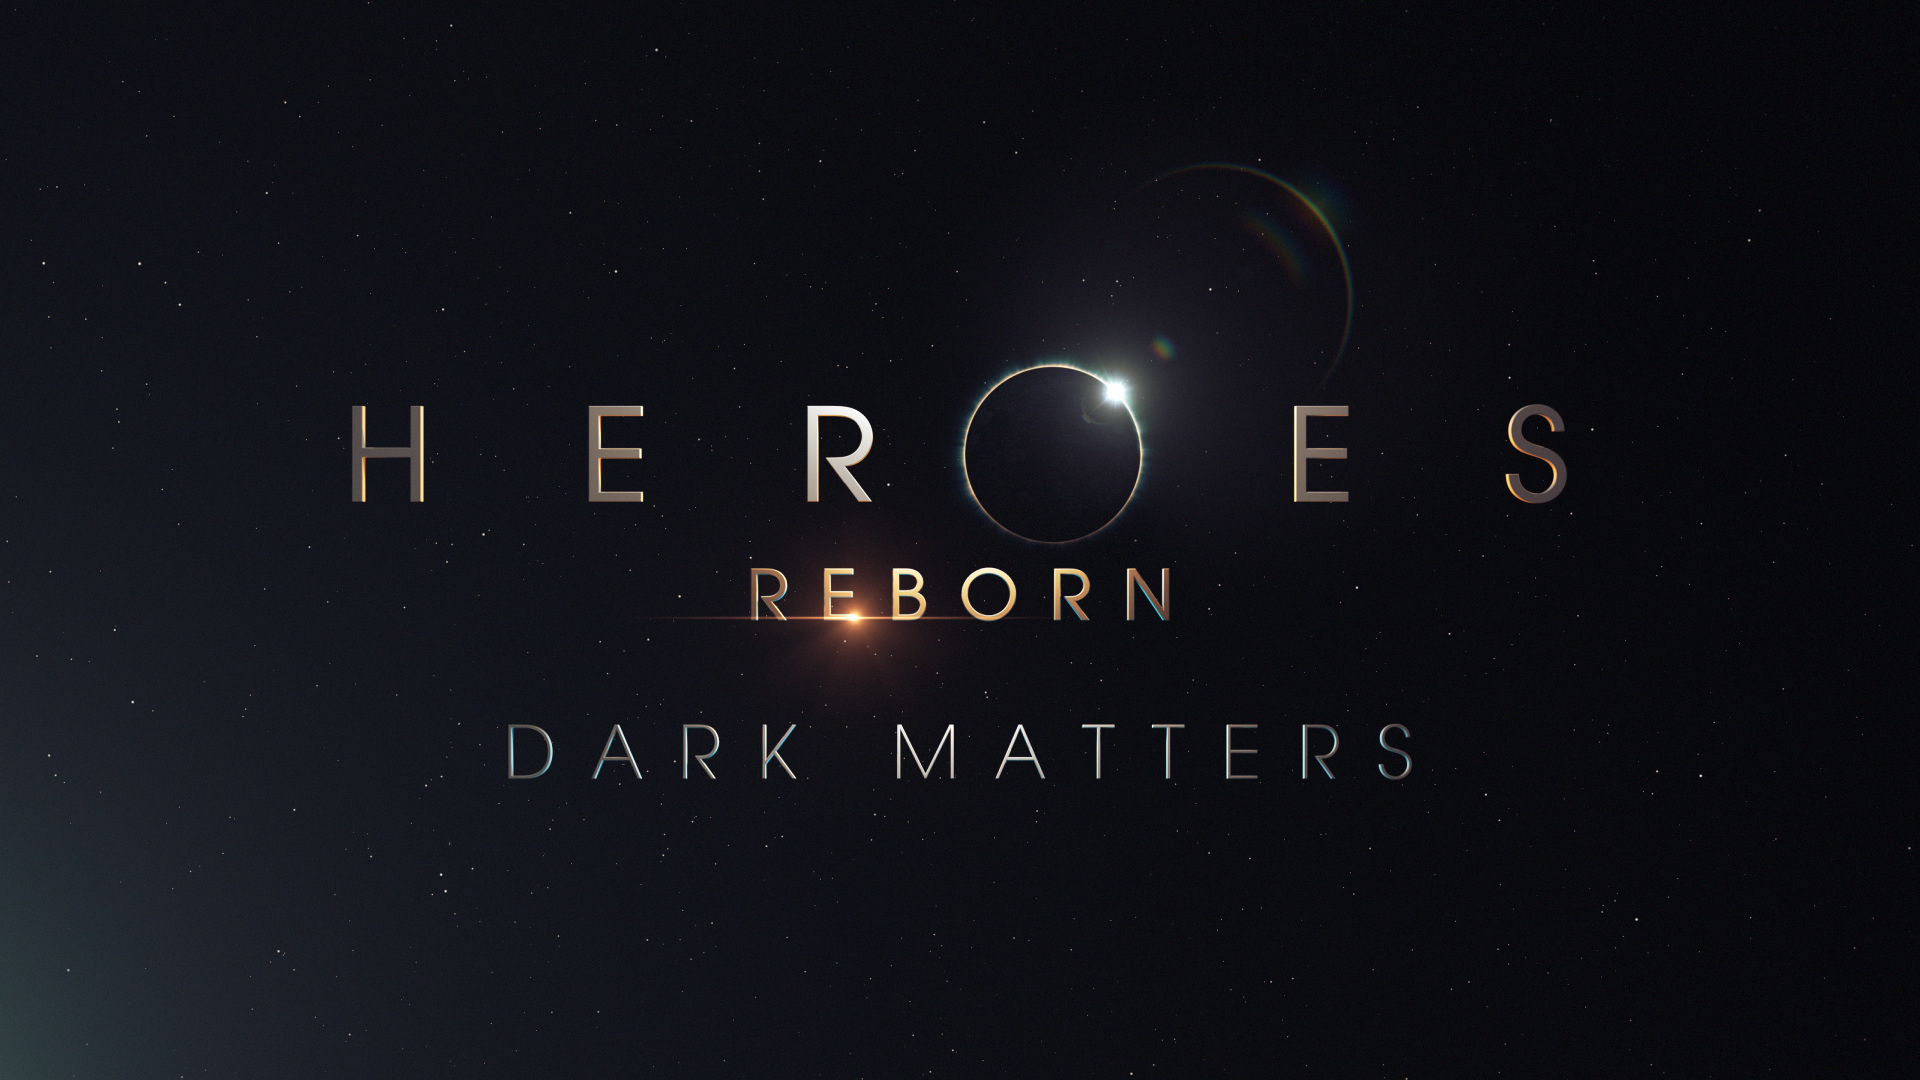 Heroes: Reborn